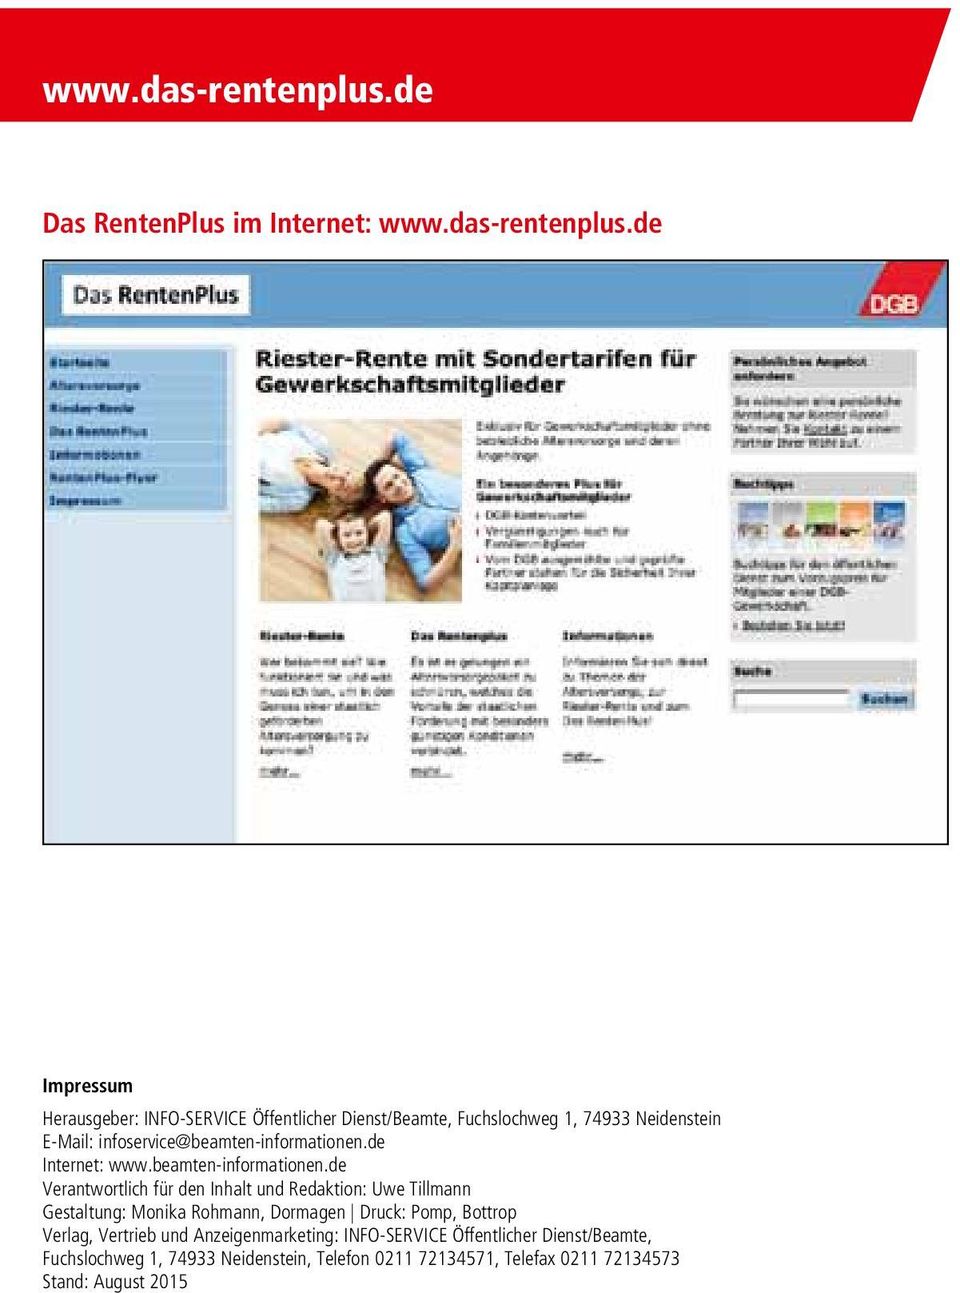 E-Mail: infoservice@beamten-informationen.